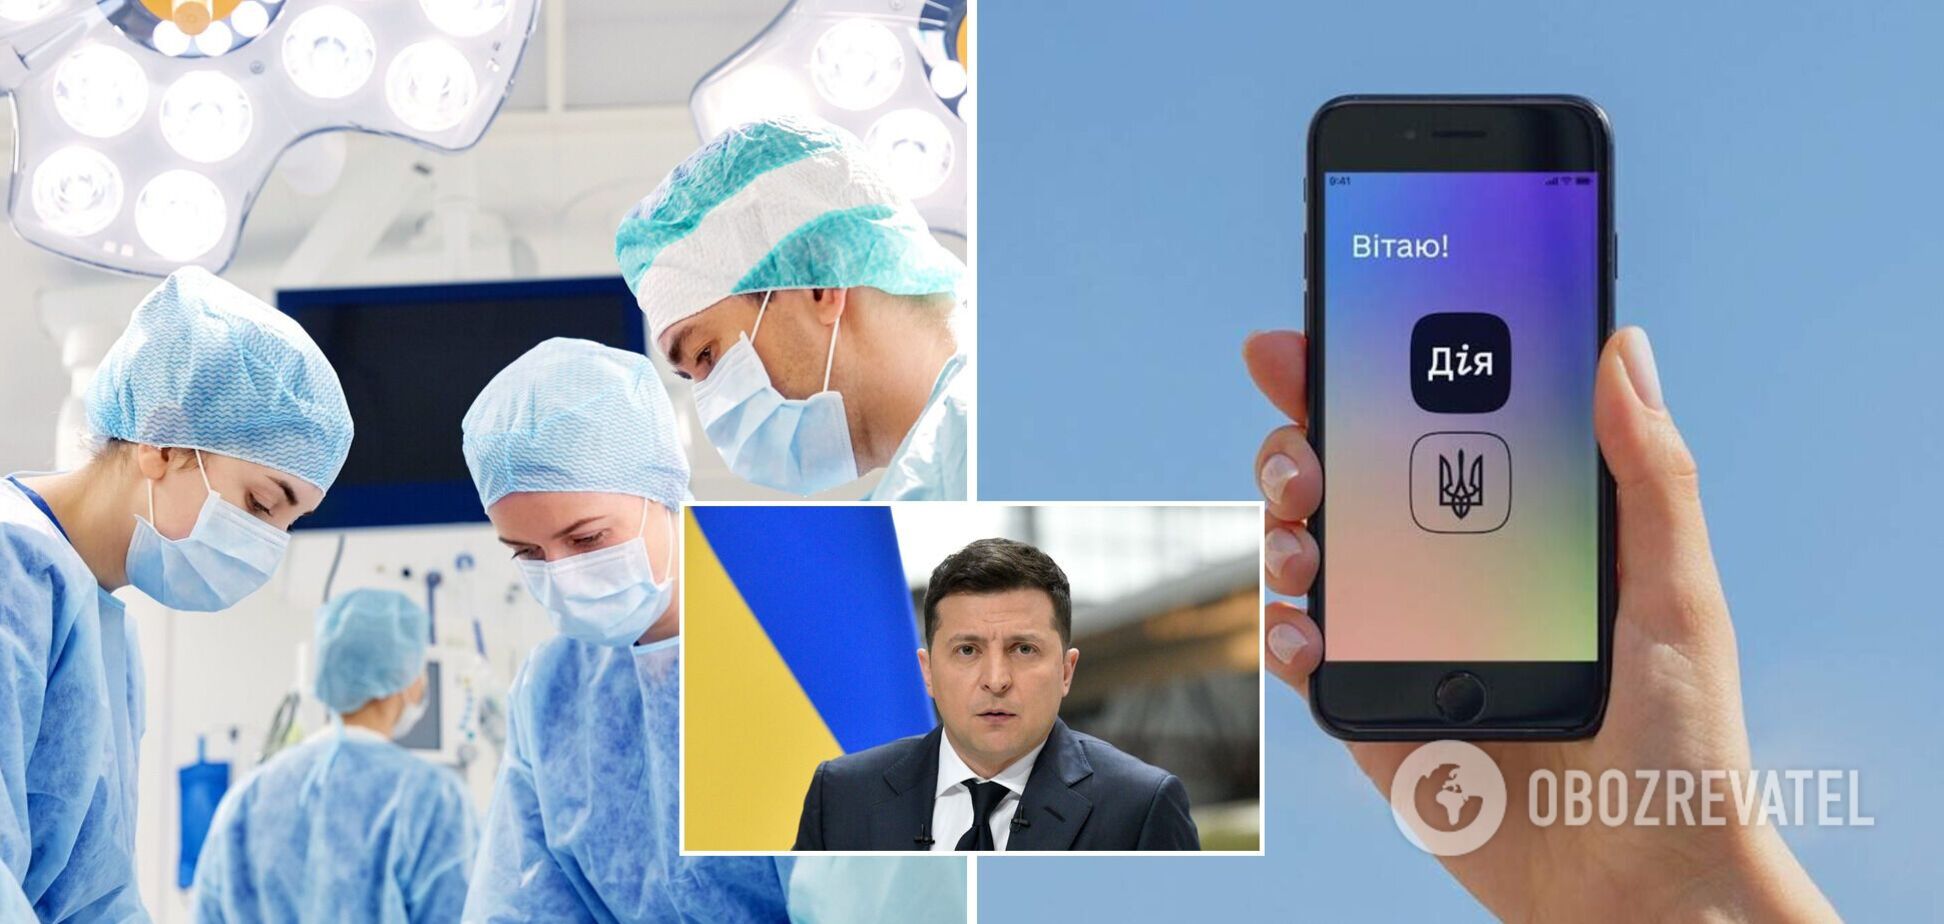 В Украине трансплантации органов сделают бесплатными: прижизненное согласие можно будет дать в Дії